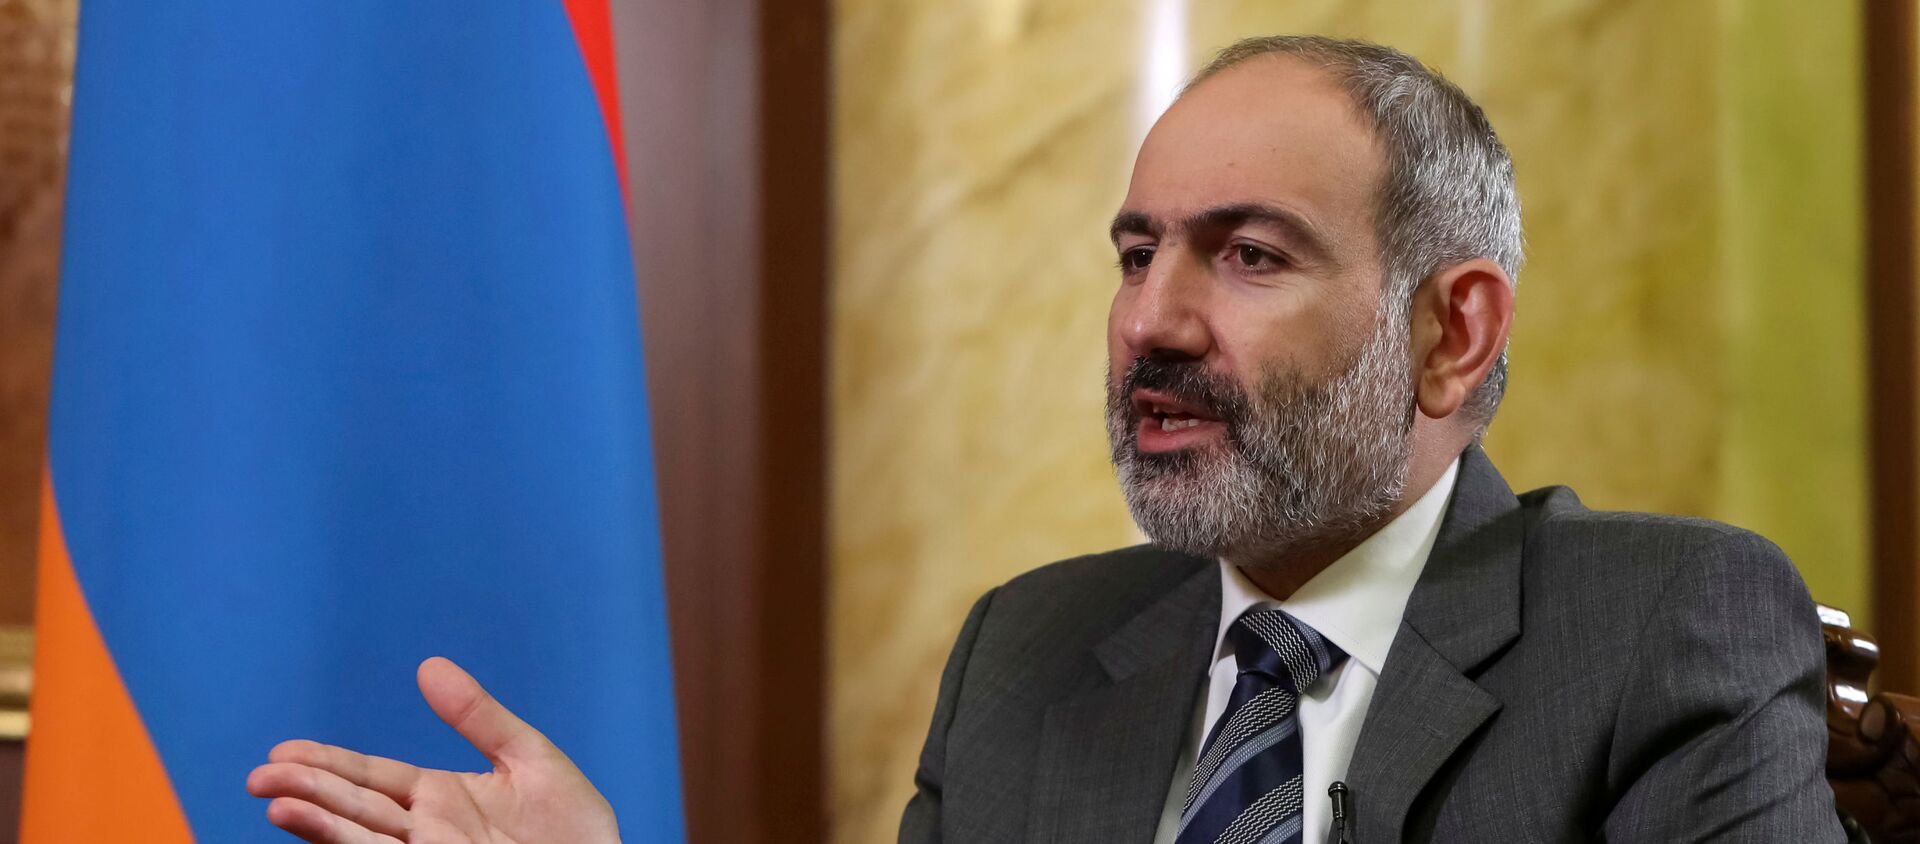 Thủ tướng Armenia Nikol Pashinyan trong cuộc phỏng vấn với Reuters ở Yerevan, Armenia - Sputnik Việt Nam, 1920, 28.03.2021